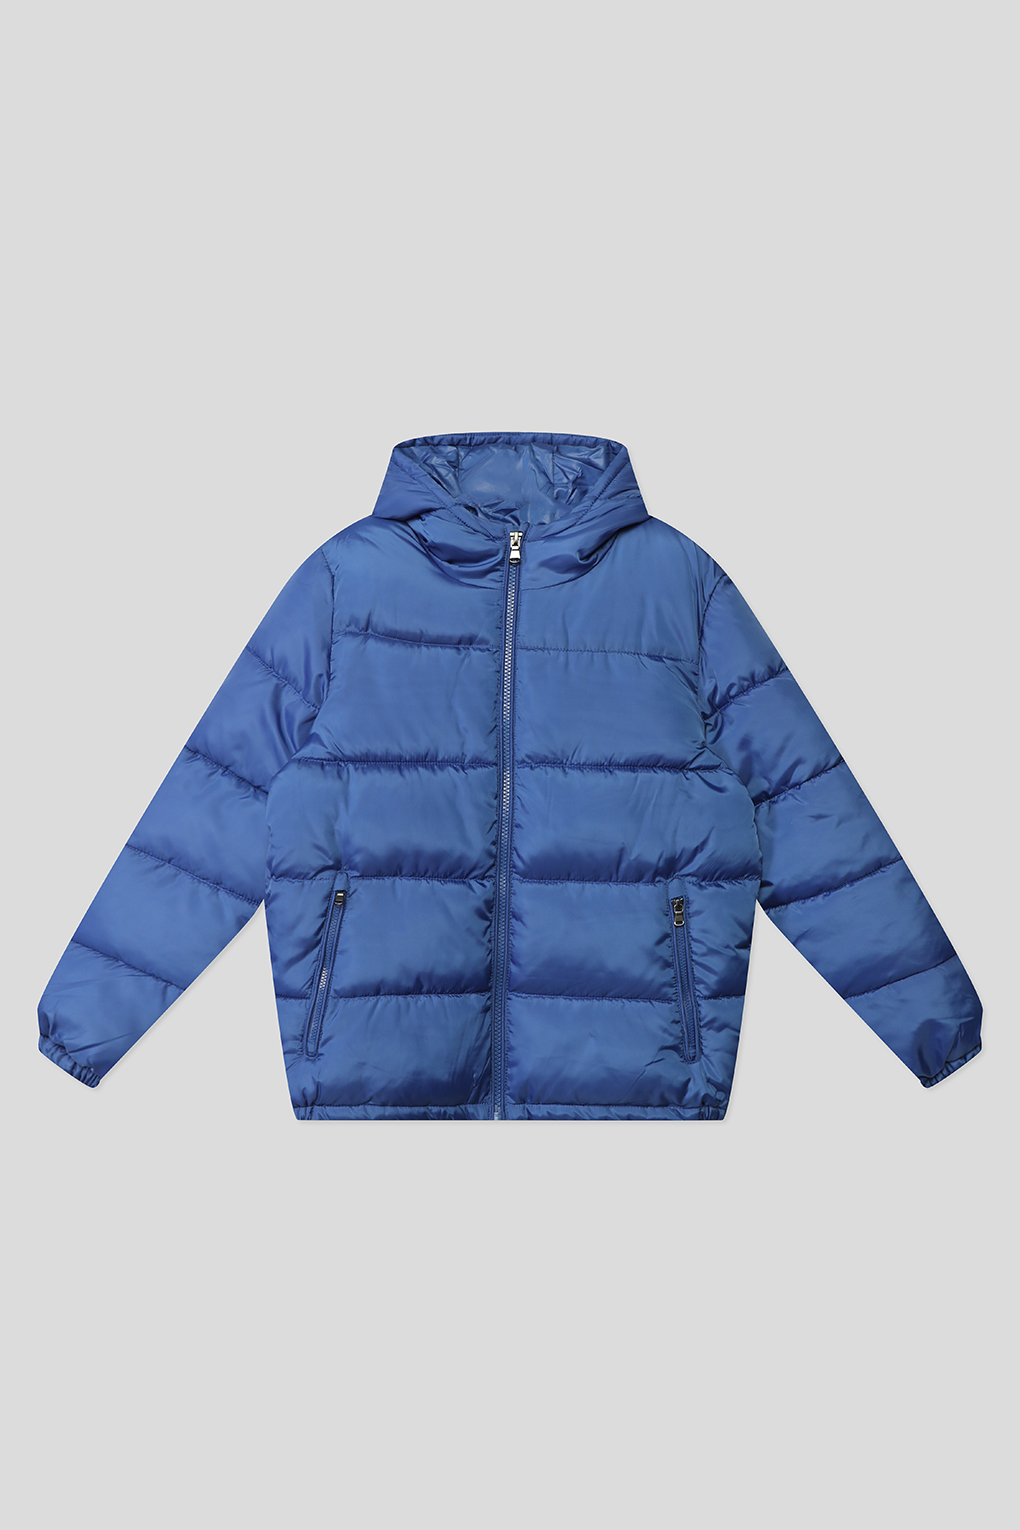 1581784, Куртка утепленная для мальчиков OVS, Синий р.104, синий  - купить